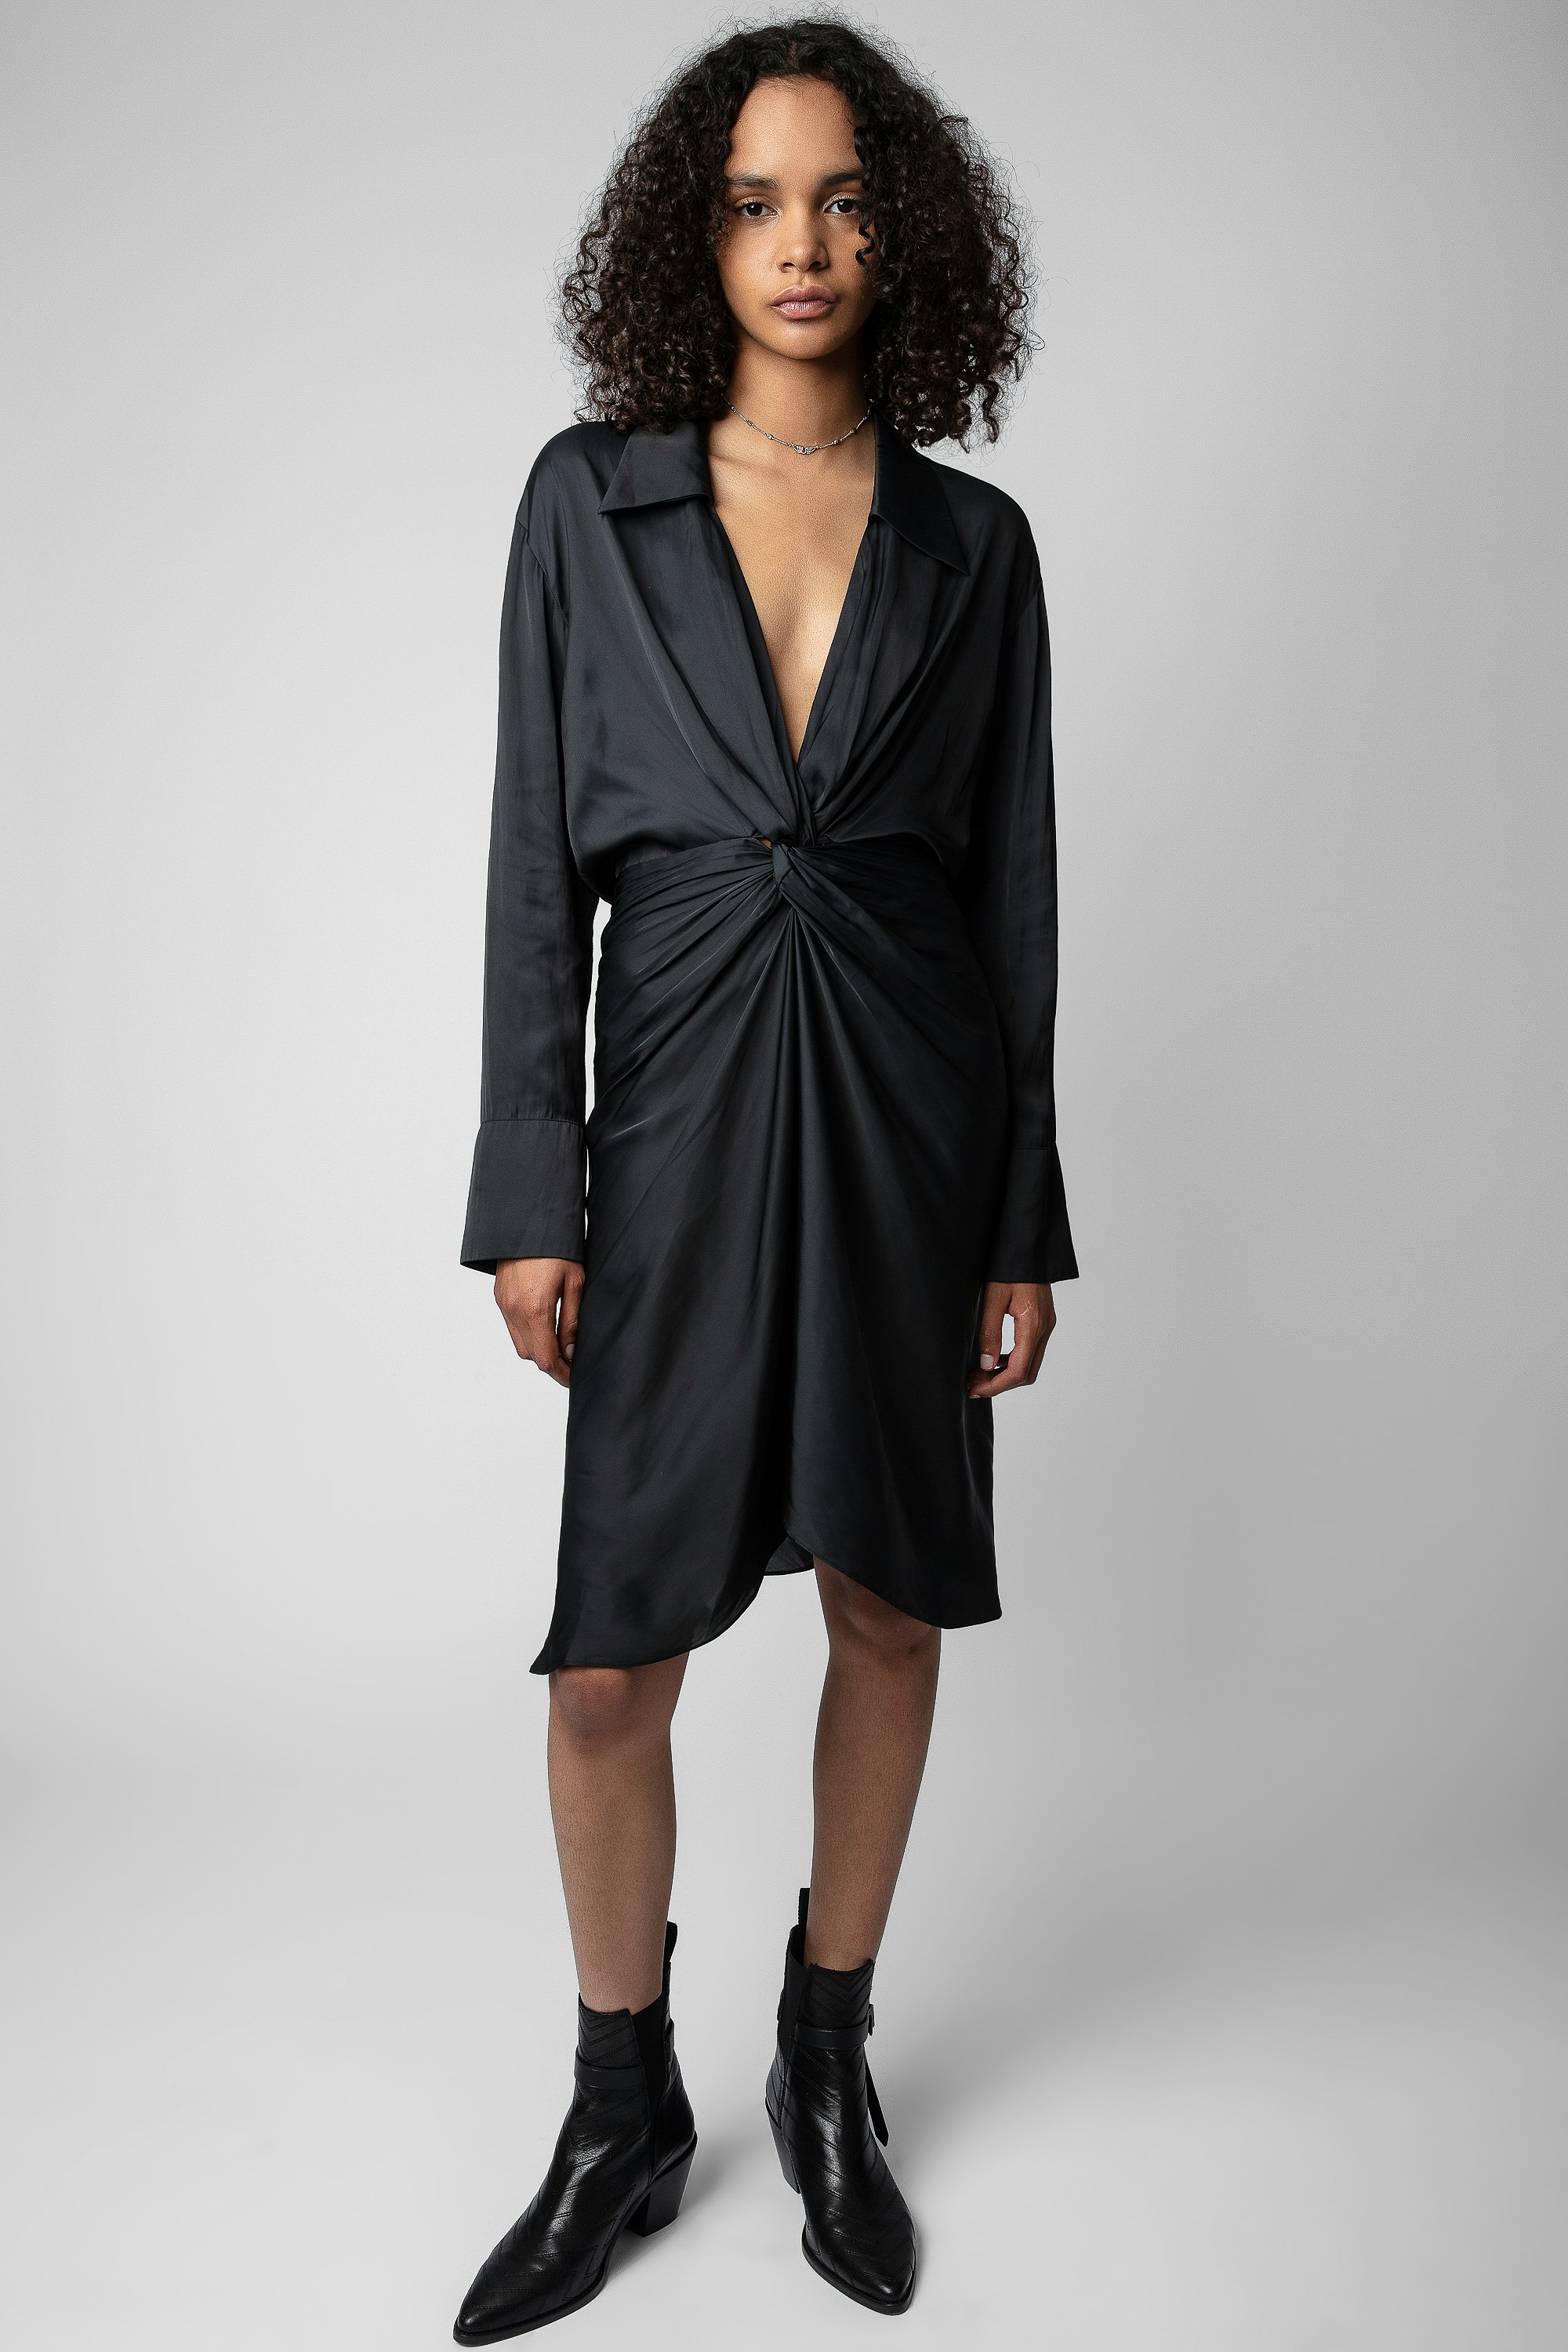 Robe Rozo Satin - Robe courte noire satinée, nouée et drapée à la taille.